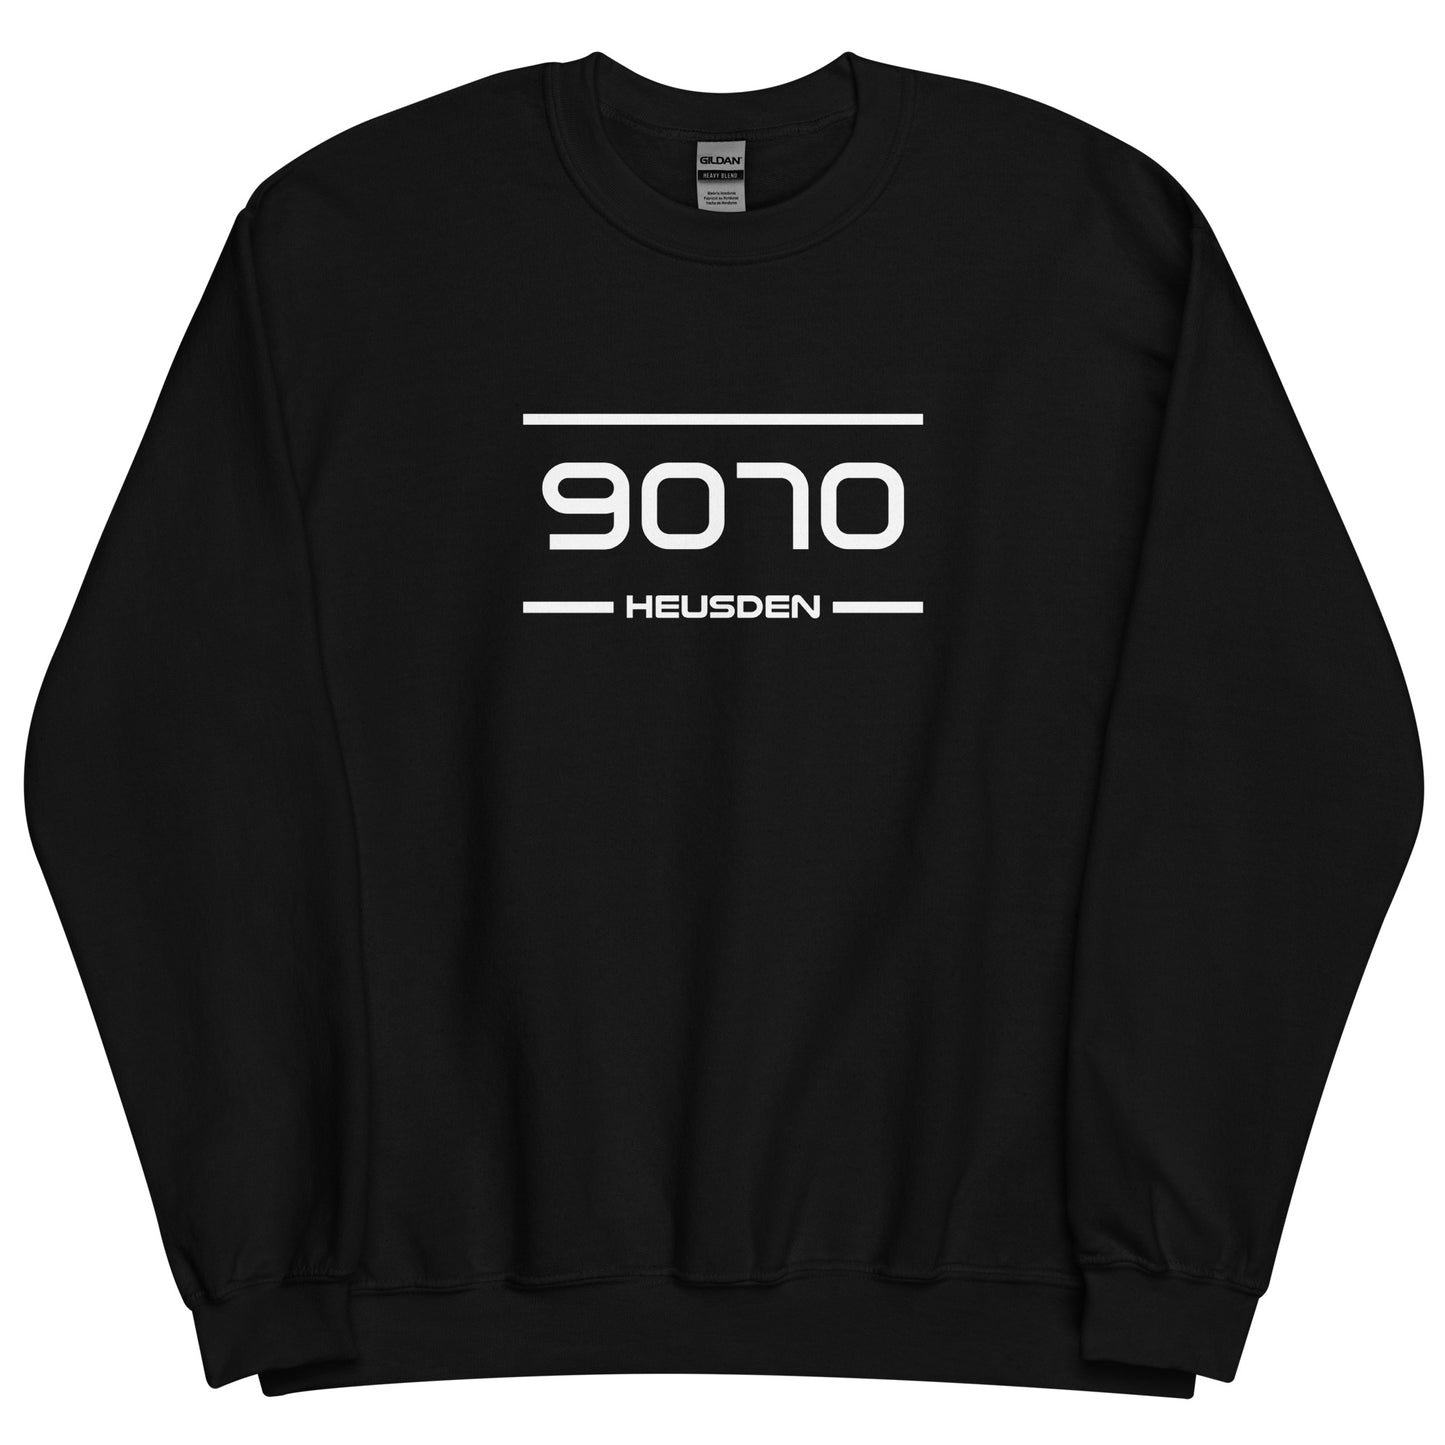 Sweater - 9070 - Heusden (M/V)